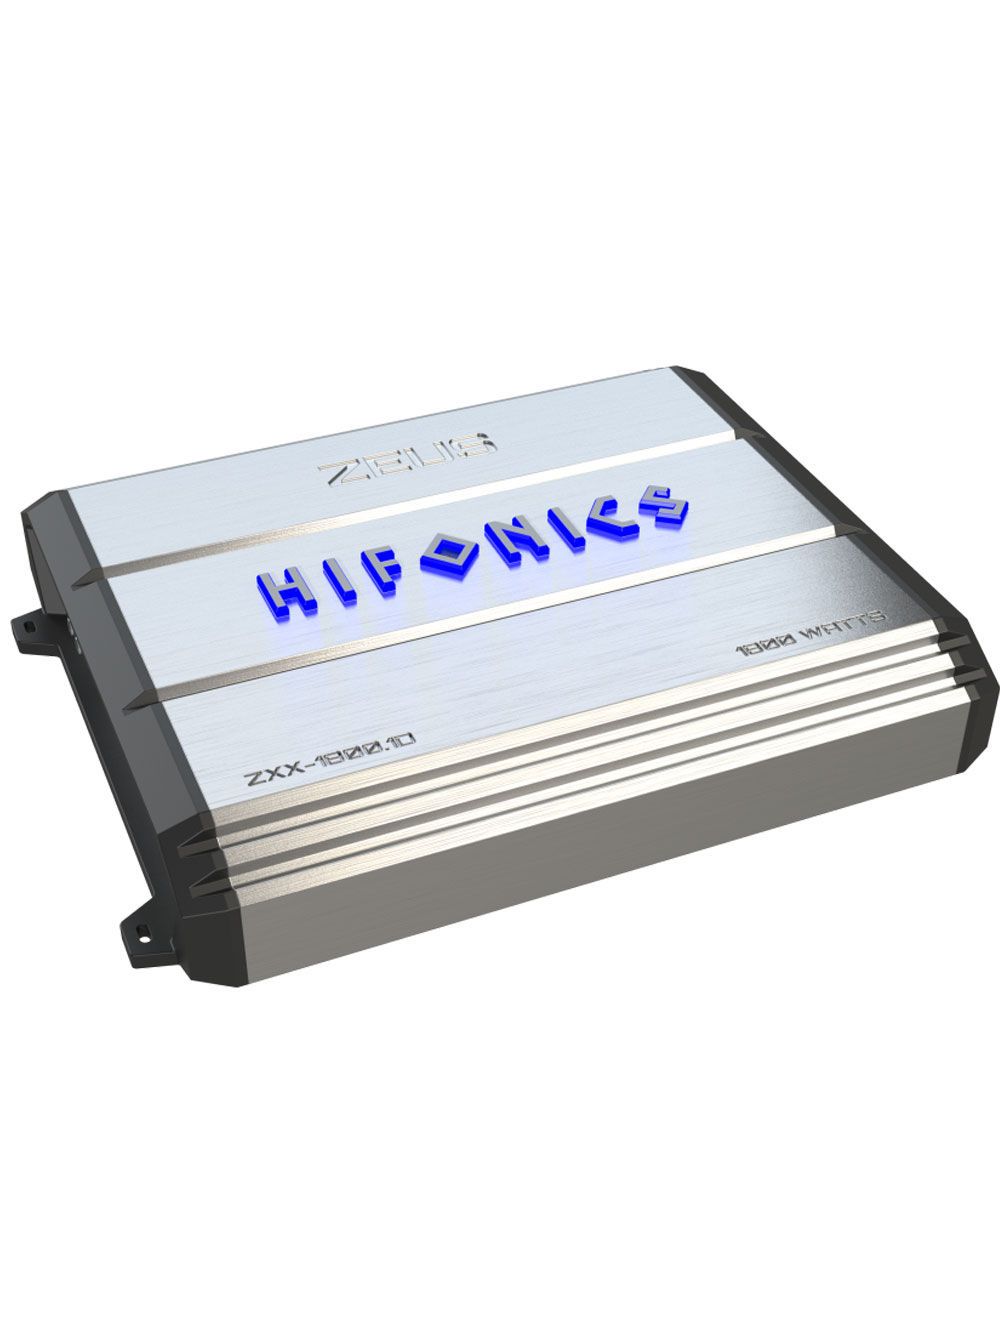 Hifonics ZXX-1800.1D Zeus Max Mono Amplifier